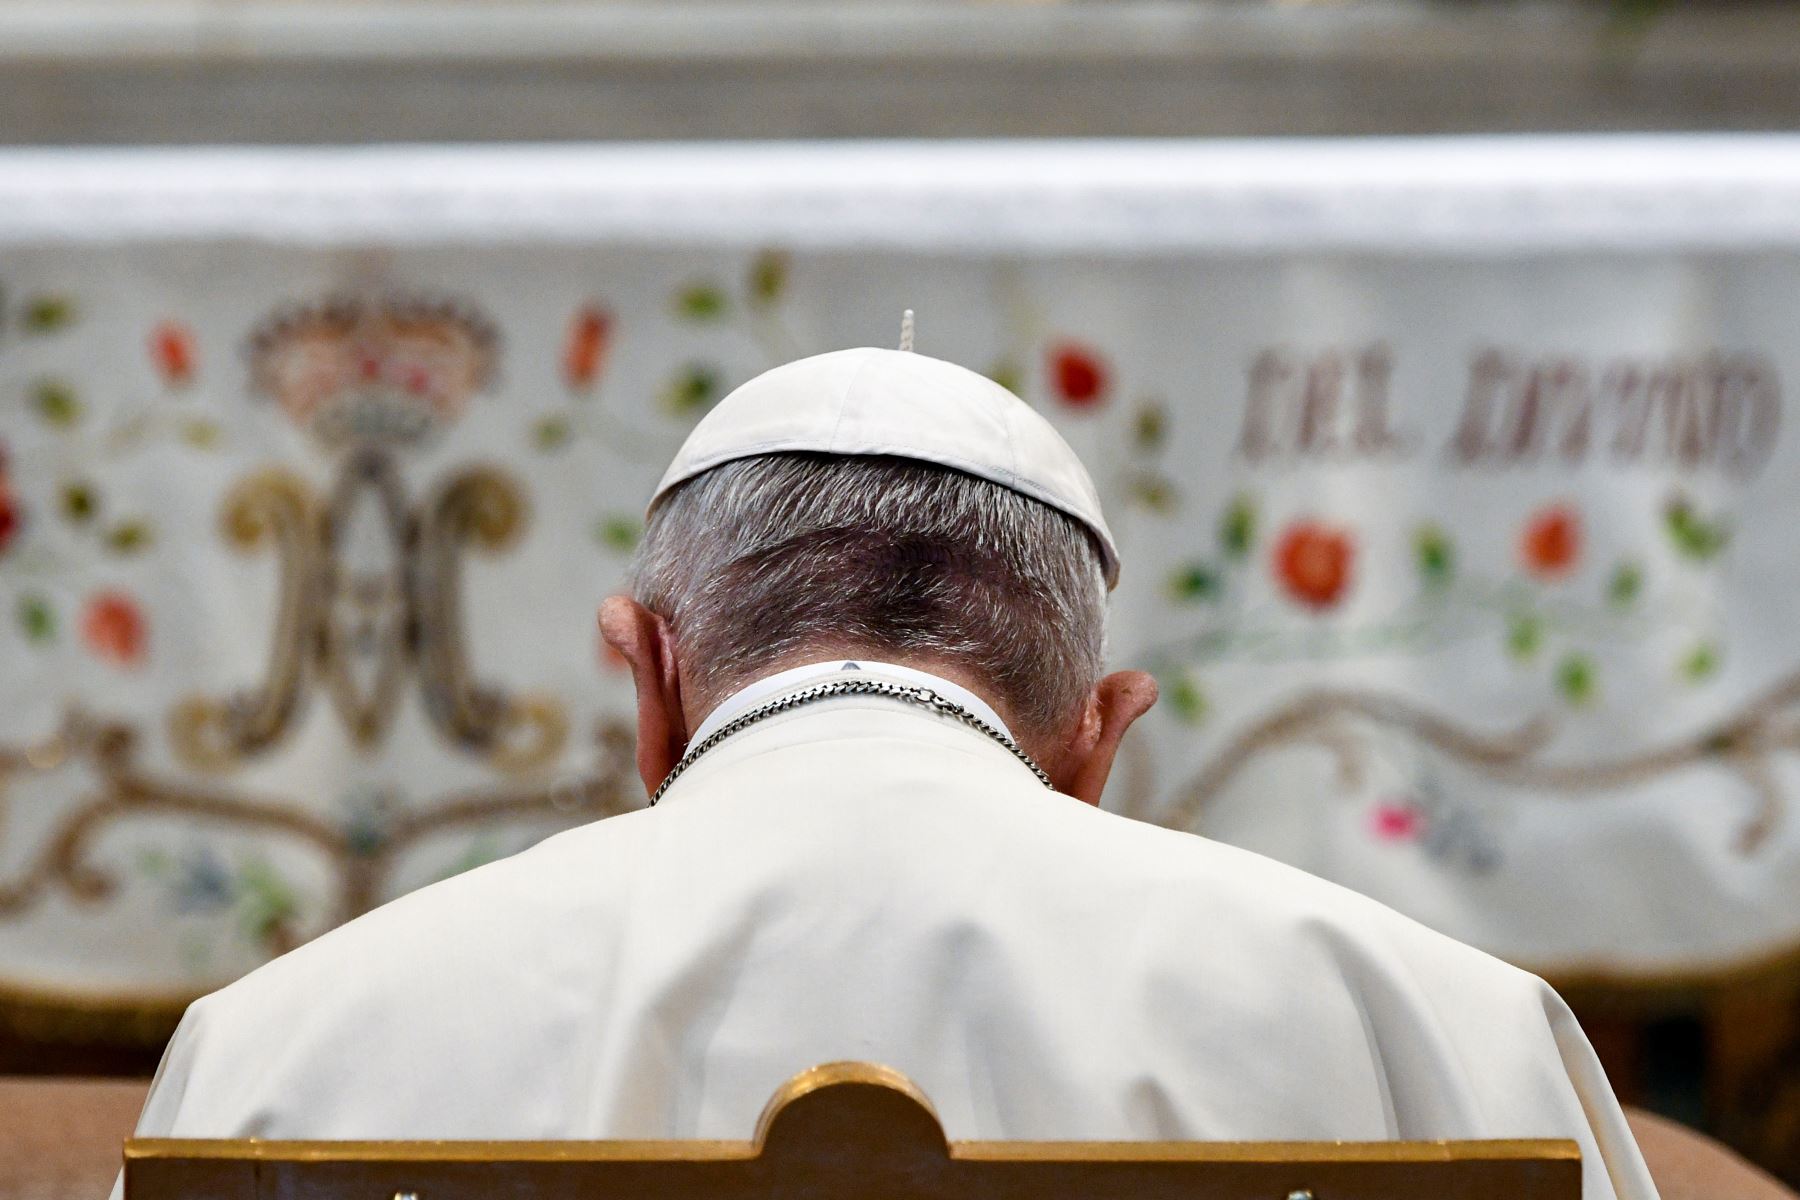 Los obispos chilenos pusieron sus cargos a disposición del papa Francisco tras los escándalos de abusos sexuales cometidos por religiosos en su país.        Foto: AFP